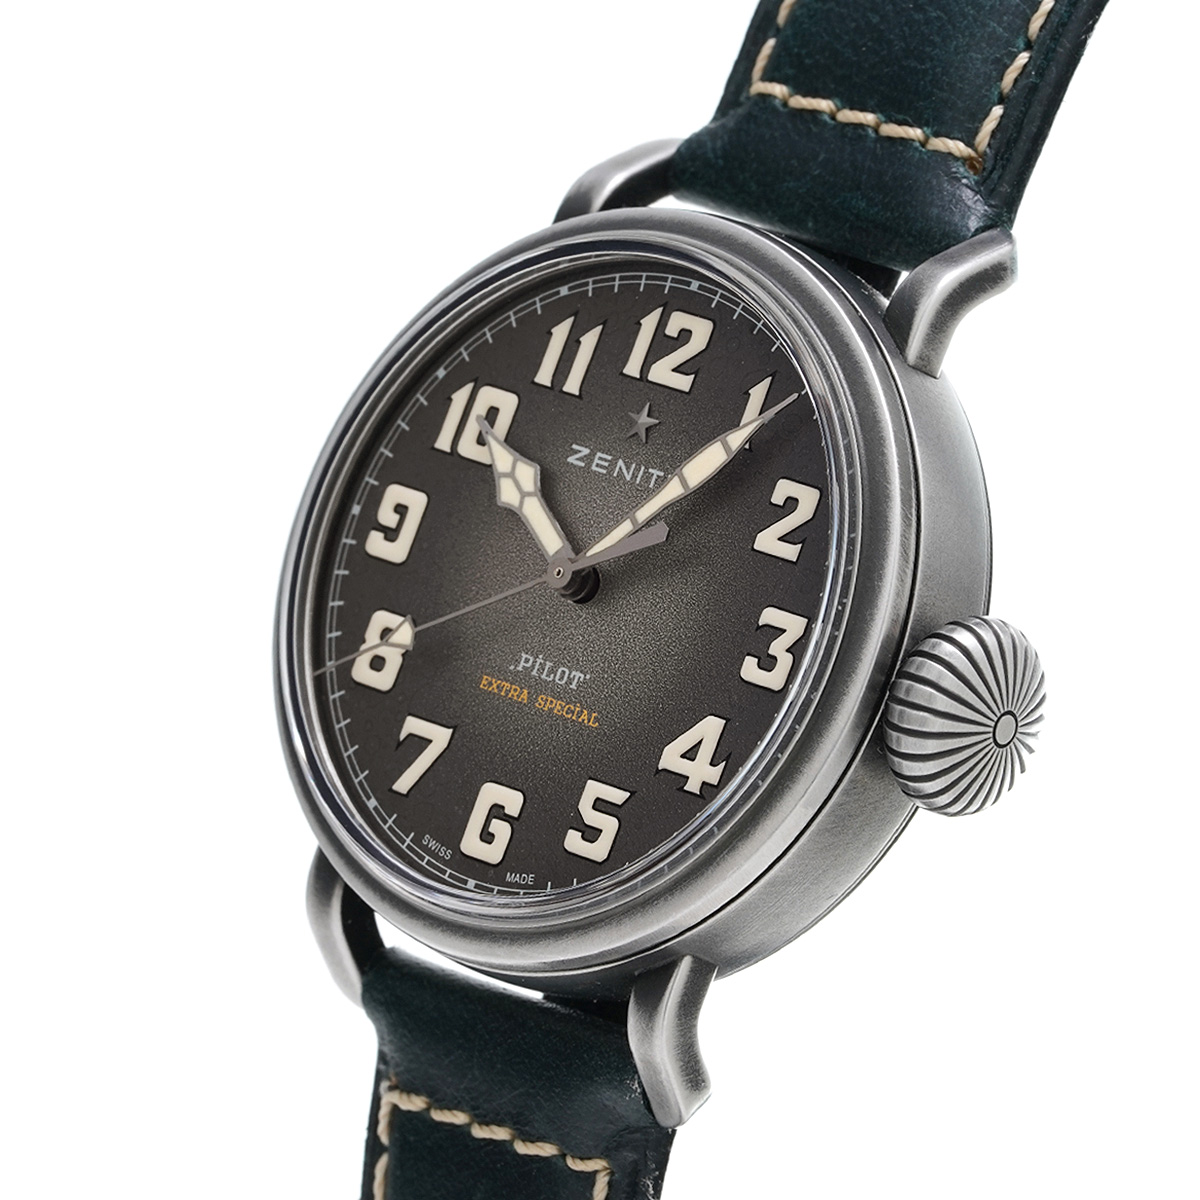 ゼニス ZENITH 11.1940.679/91.C807 グレー メンズ 腕時計